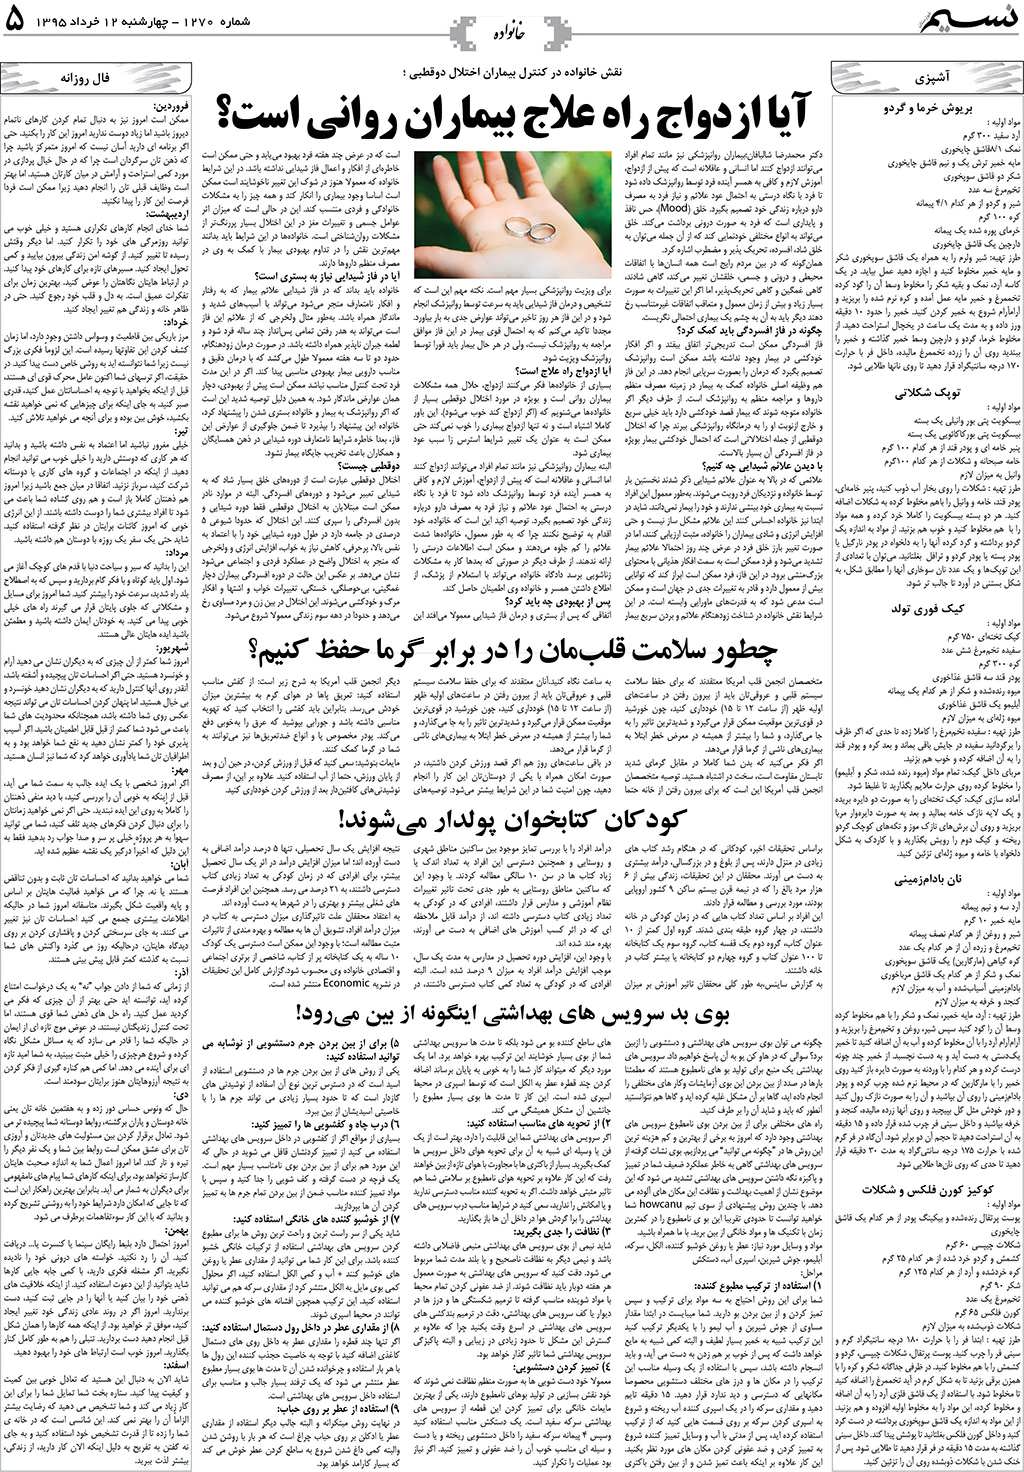 صفحه خانواده روزنامه نسیم شماره 1270